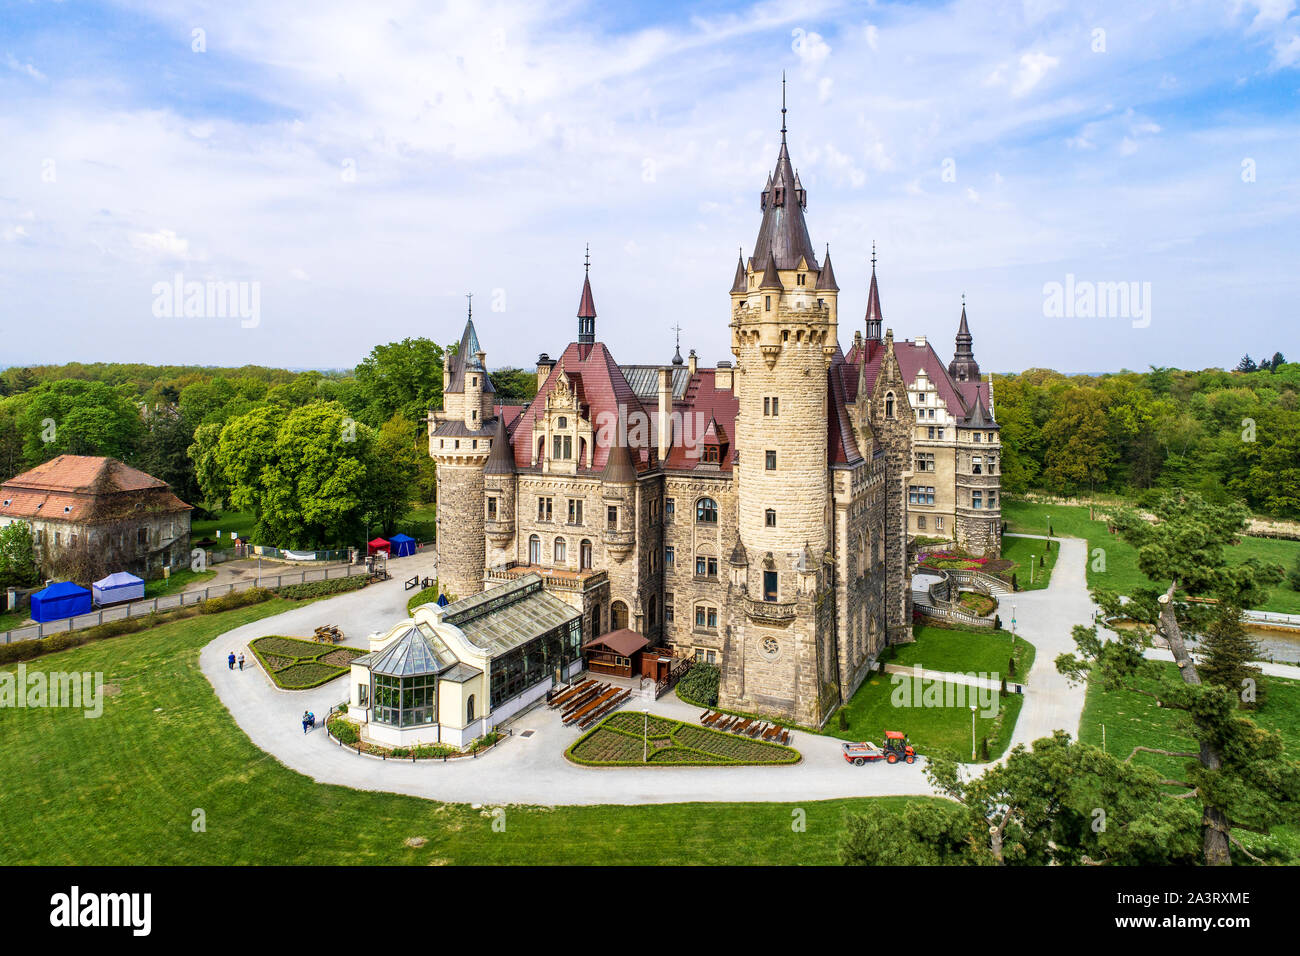 Favoloso castello storico di Moszna nei pressi di Opole, Slesia, Polonia. Costruito nel XVII secolo, esteso dal 1900 al 1914. Foto Stock